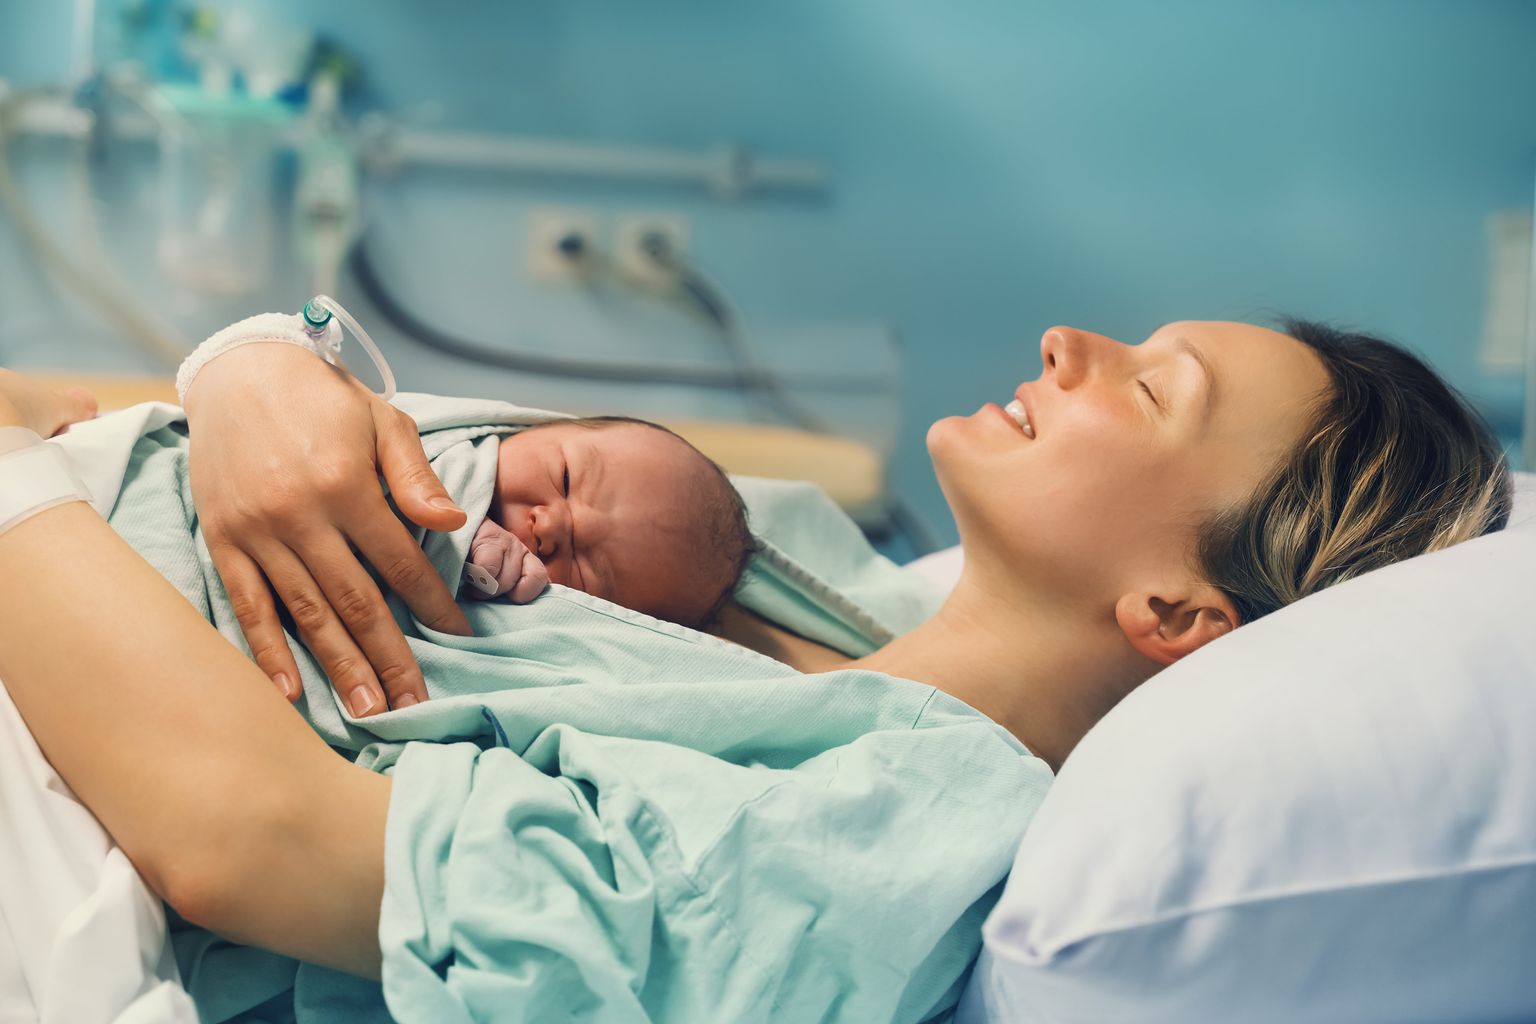 Una madre è sdraiata e tiene il suo bambino appena nato sul petto in un ospedale, sorridendo con gli occhi chiusi.